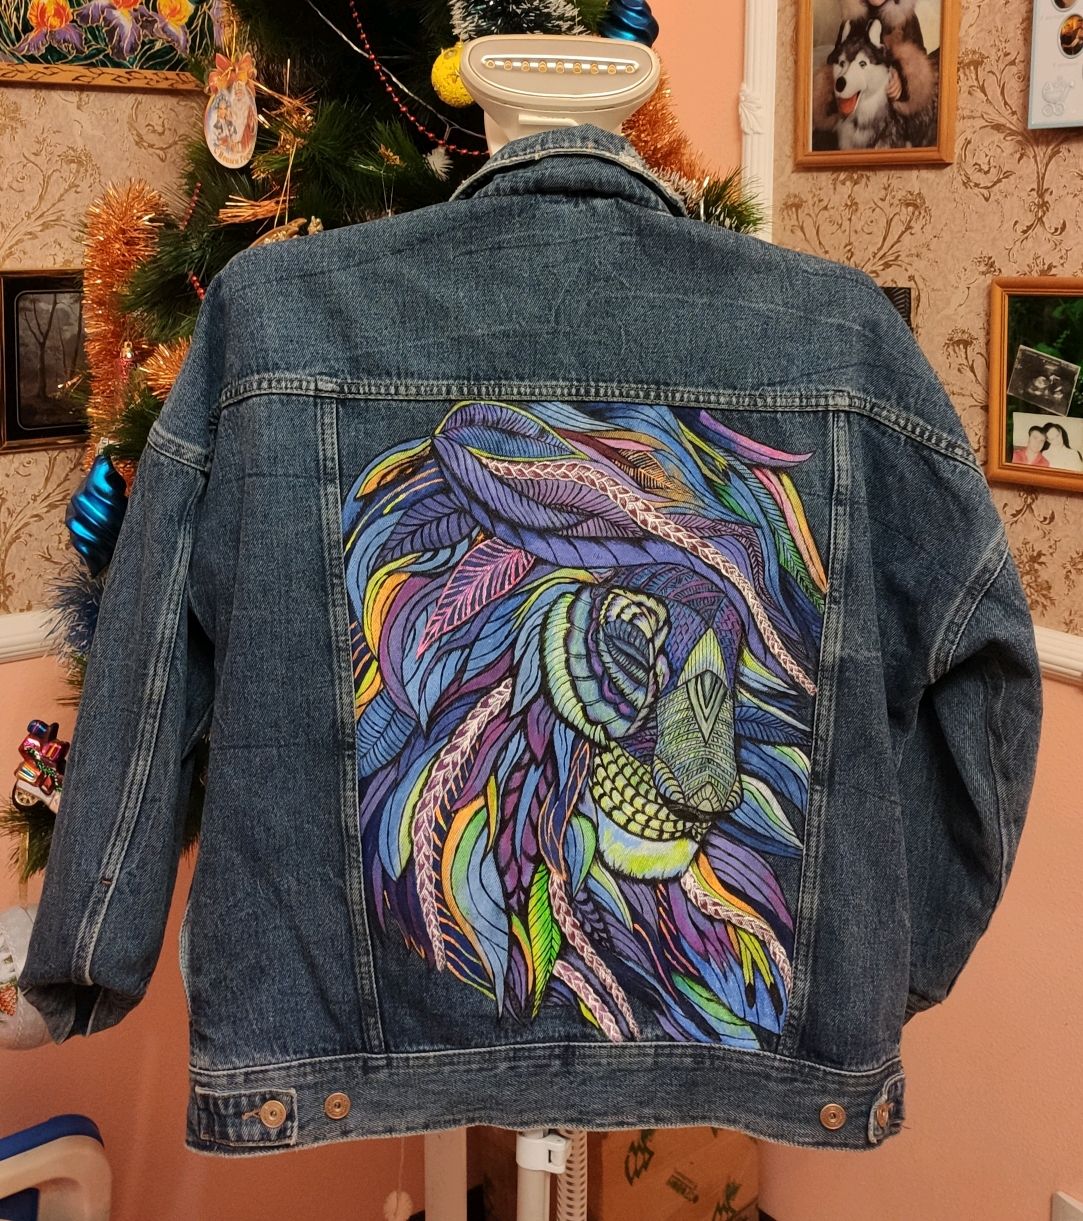 Раскрасить джинсовую куртку акриловыми красками